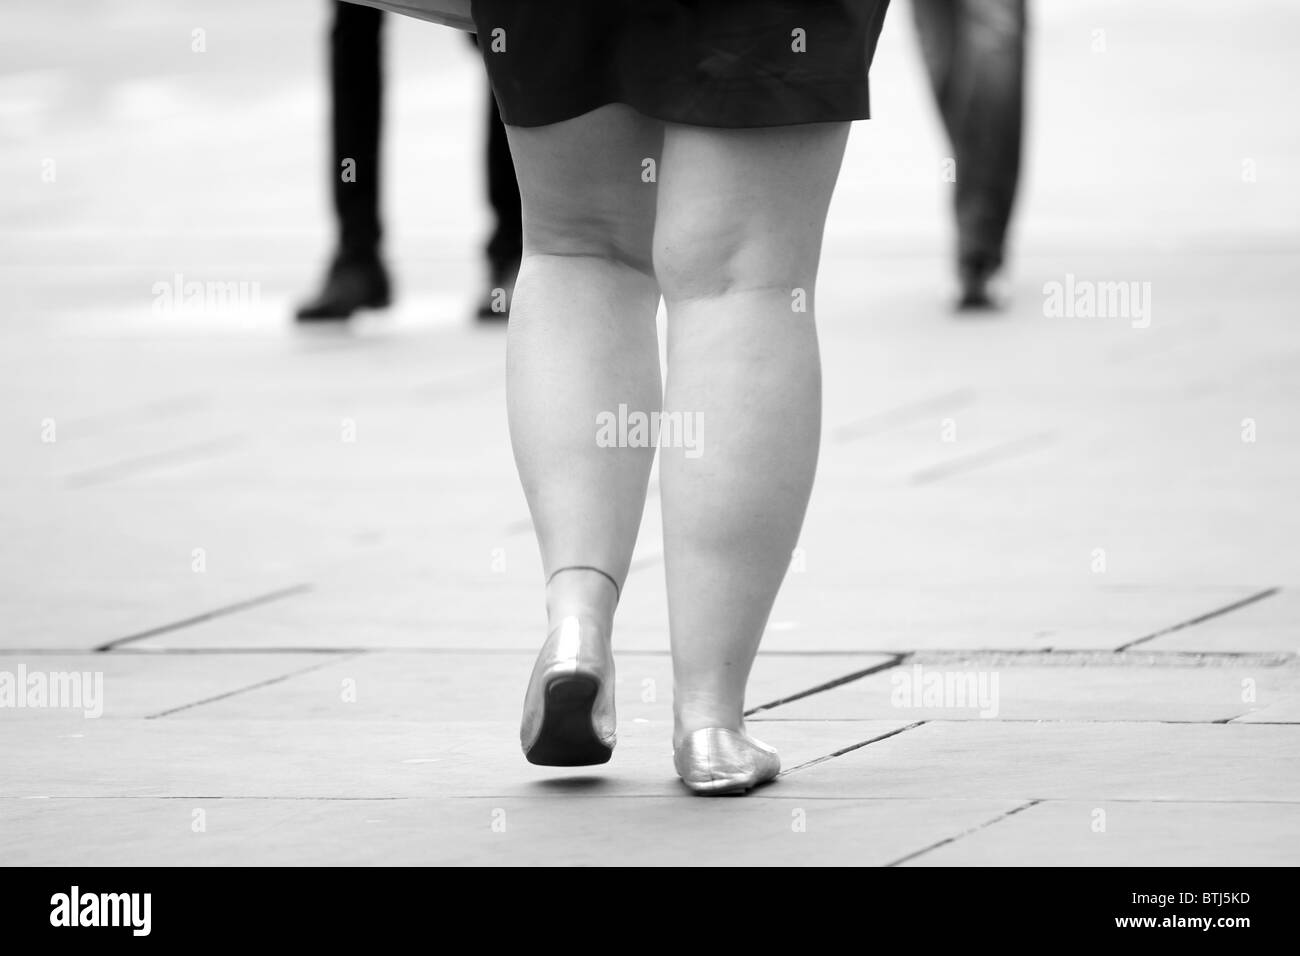 L'heure Noir Blanc Chaussures pieds se déplacer pour se rendre au travail en retard au travail rat race London life style de vêtements Manteaux Ville Banque D'Images